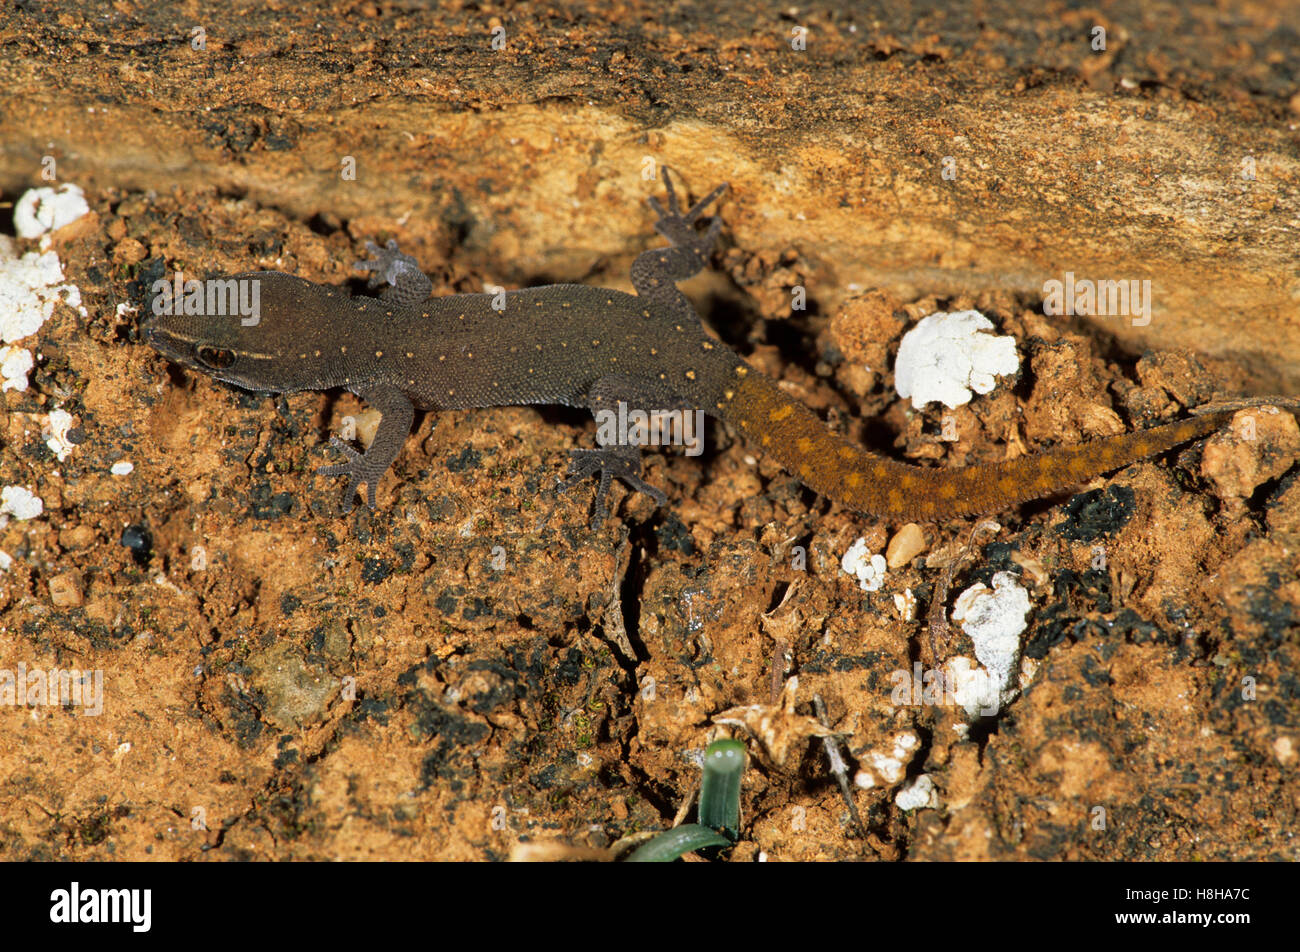 Saurodactylus brosseti lizard, Marocco Foto Stock